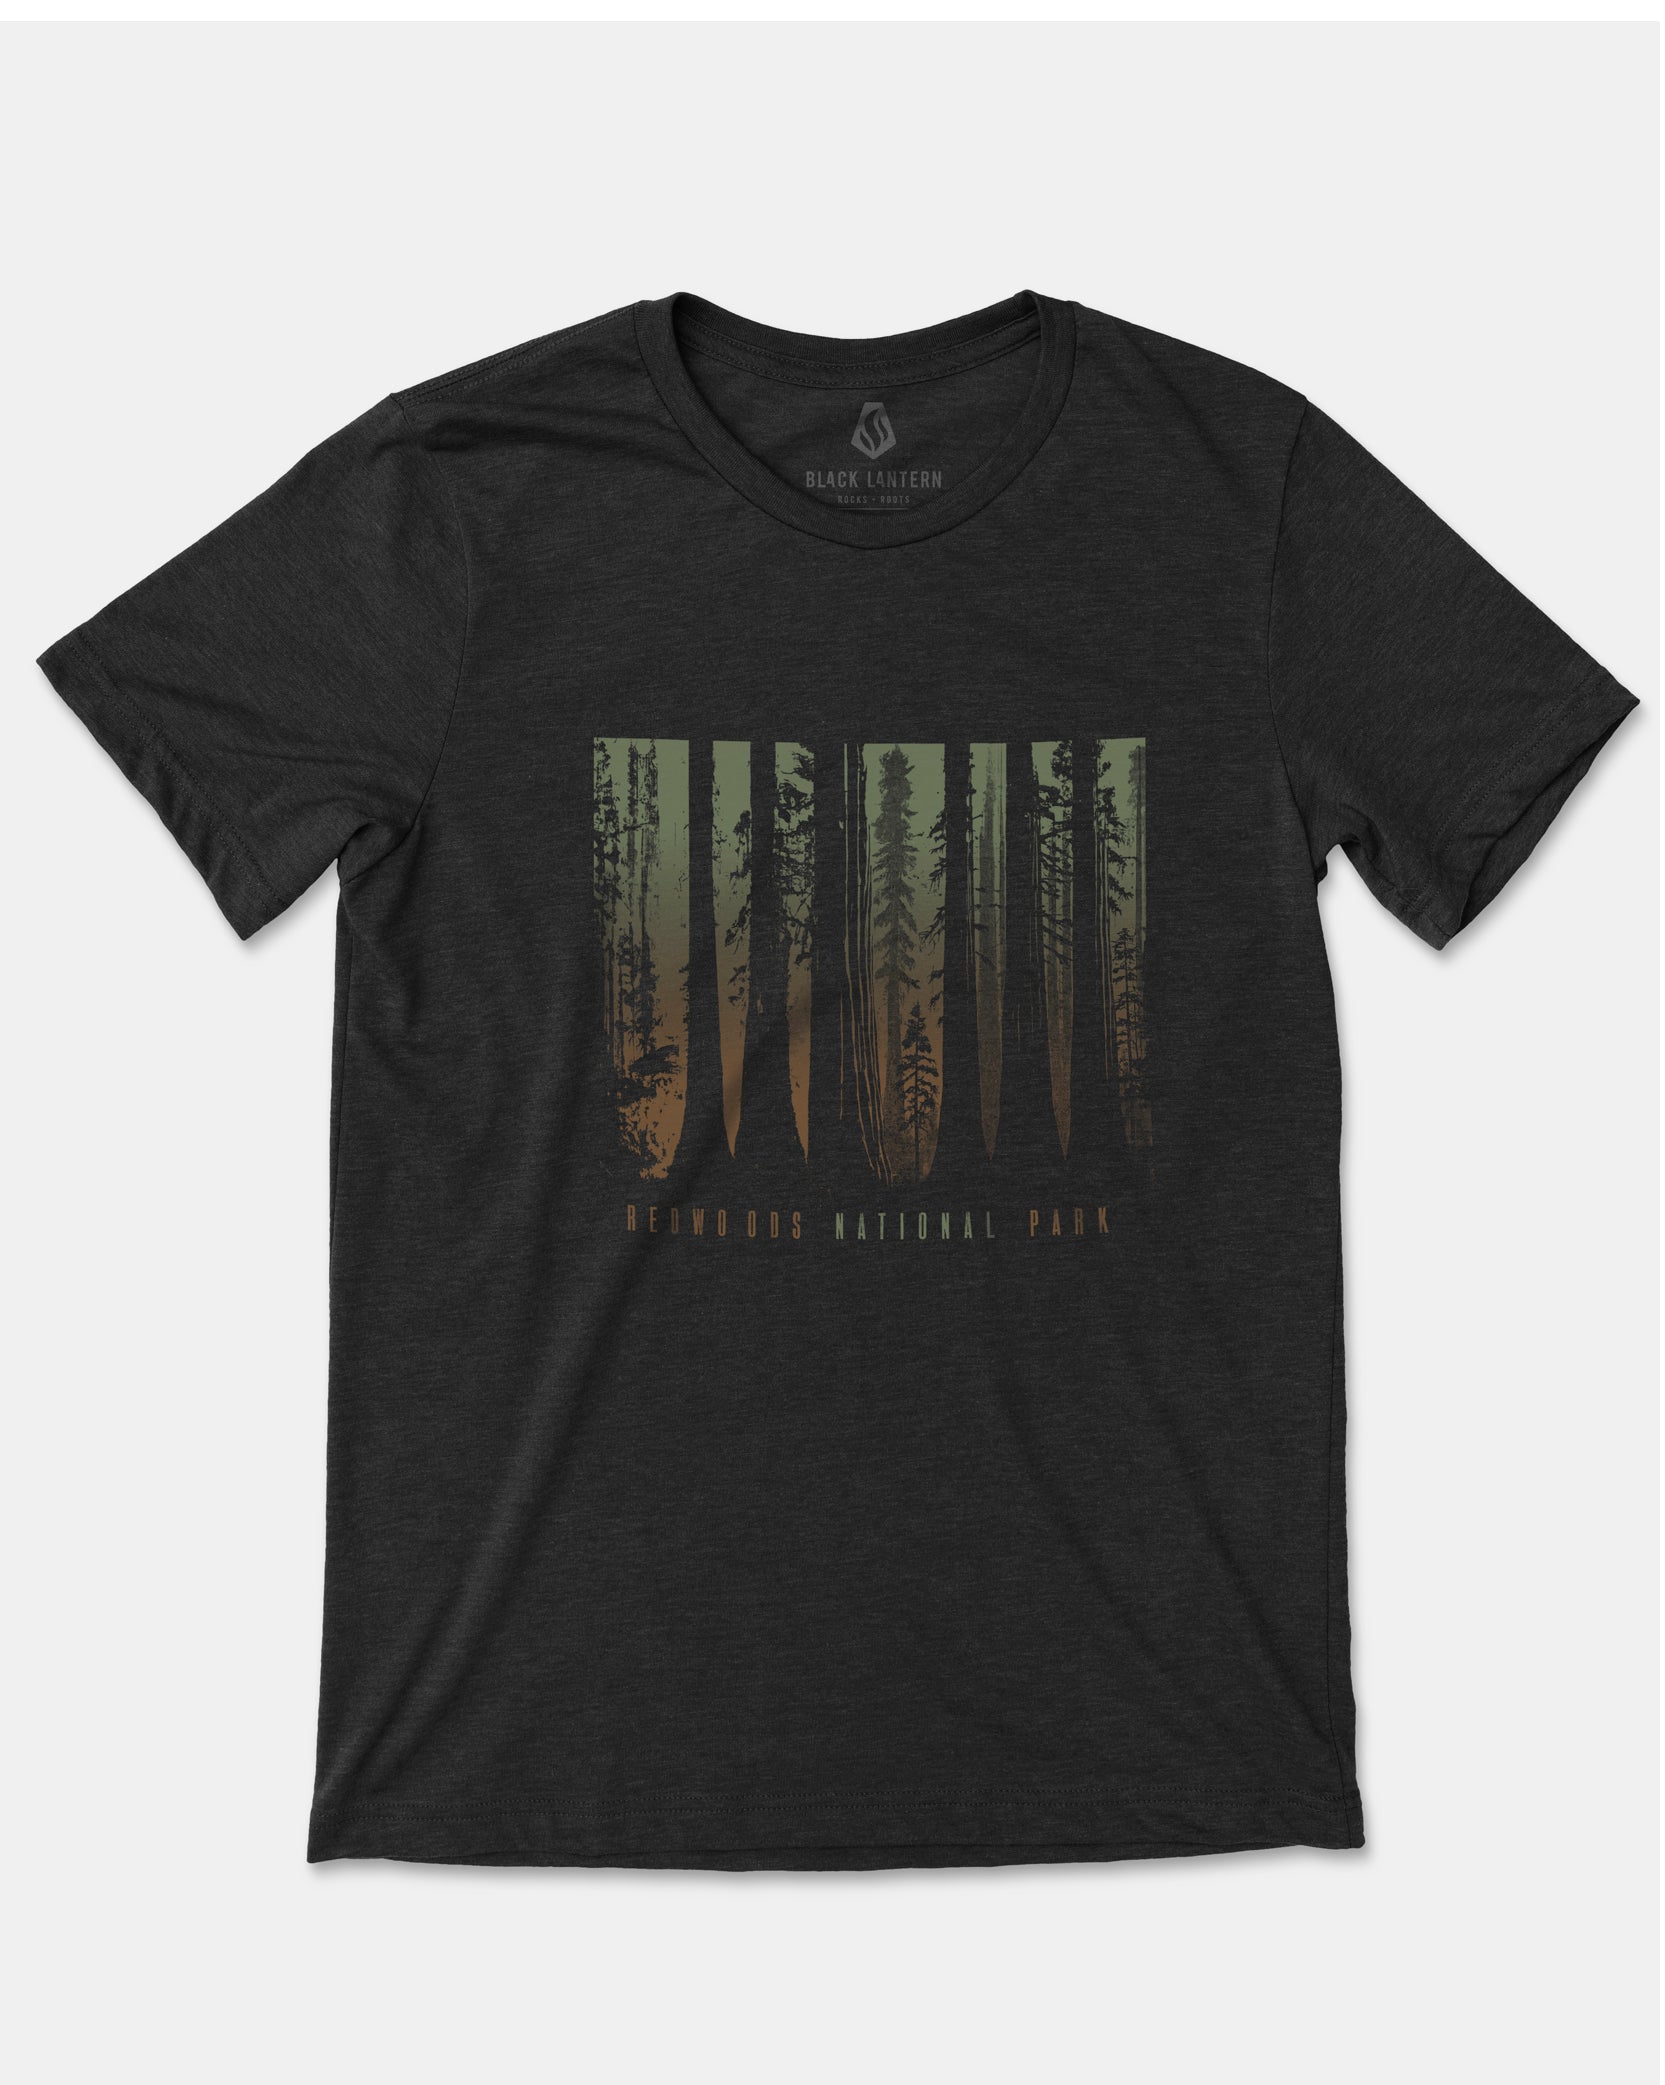 Mens Redwoods National Park Tshirt Vintage Black 2